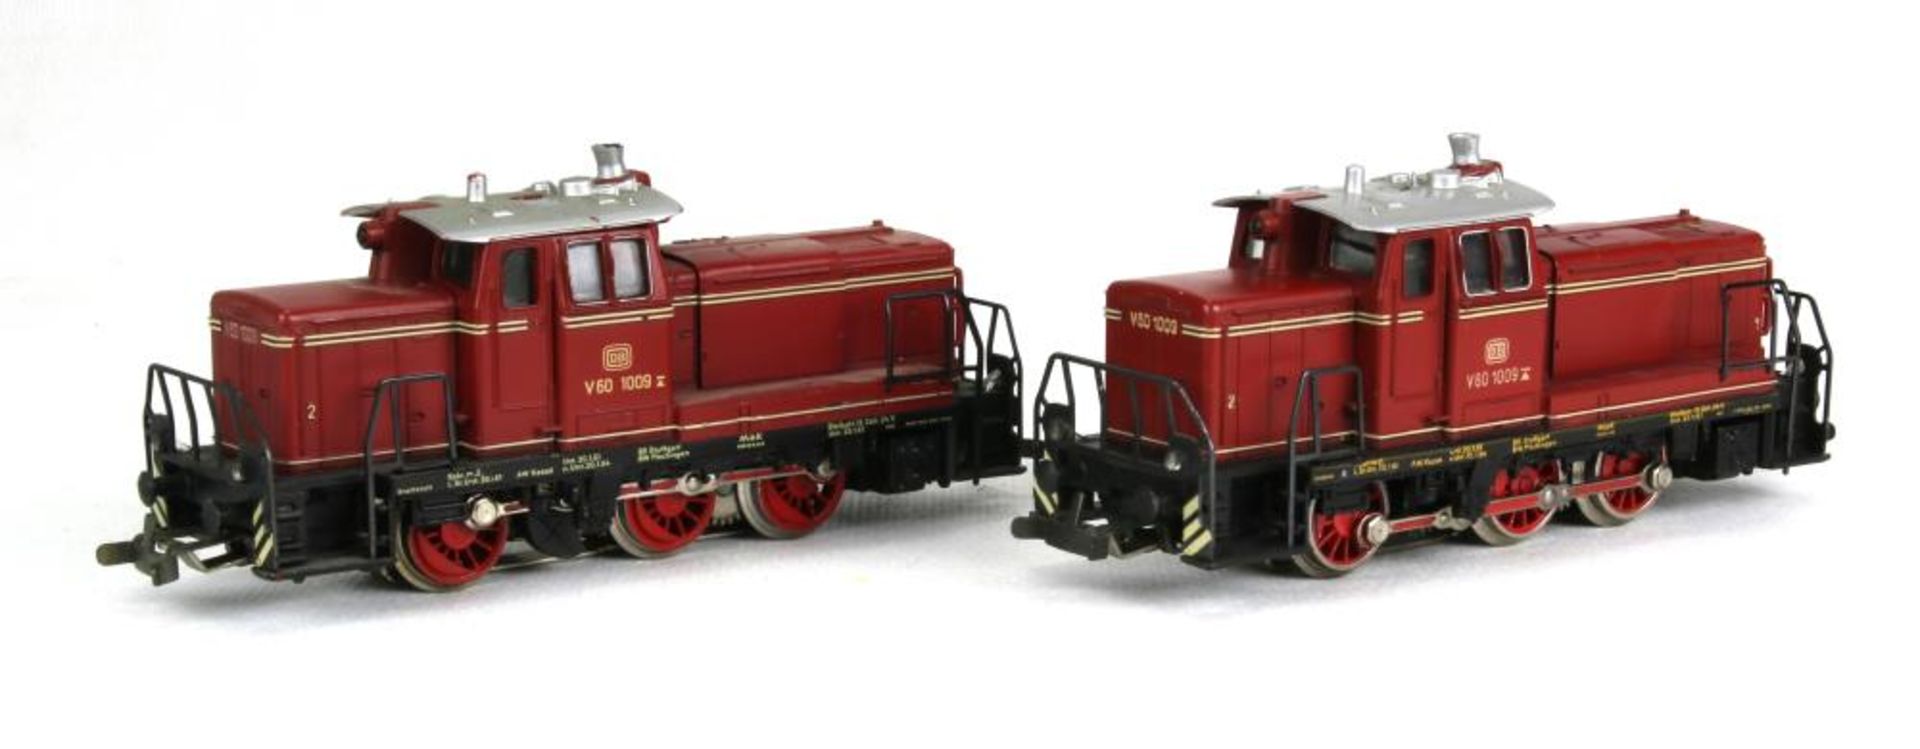 Zwei Diesel-Loks. Märklin H0 3064 (V60 1009) der DB, 3065 (V60 1009) der DB, beide in OVP. - Bild 2 aus 4